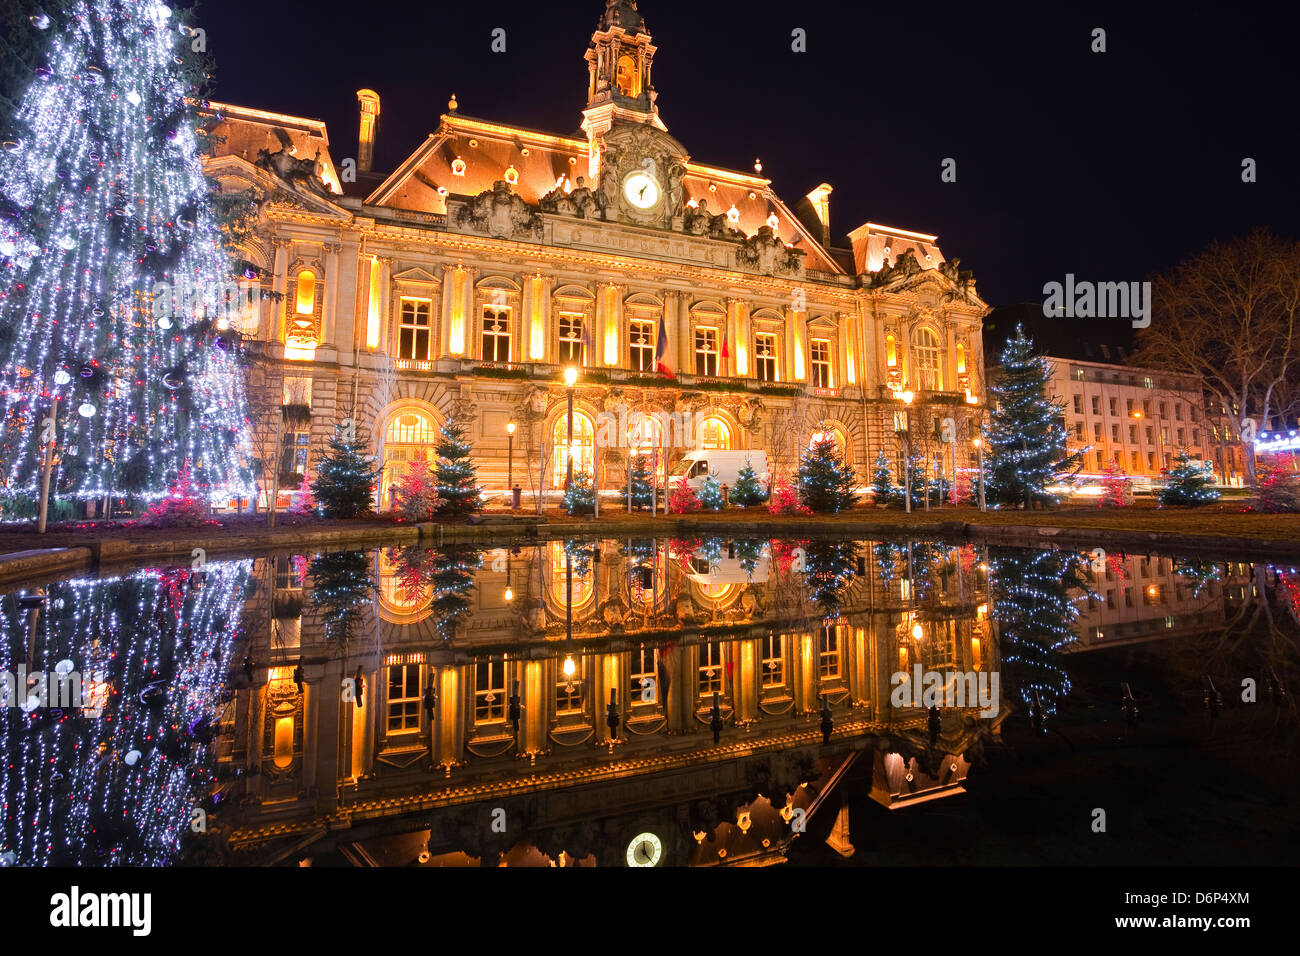 La Mairie de Tours éclairées avec des lumières de Noël, Tours, Indre-et-Loire, France, Europe Banque D'Images